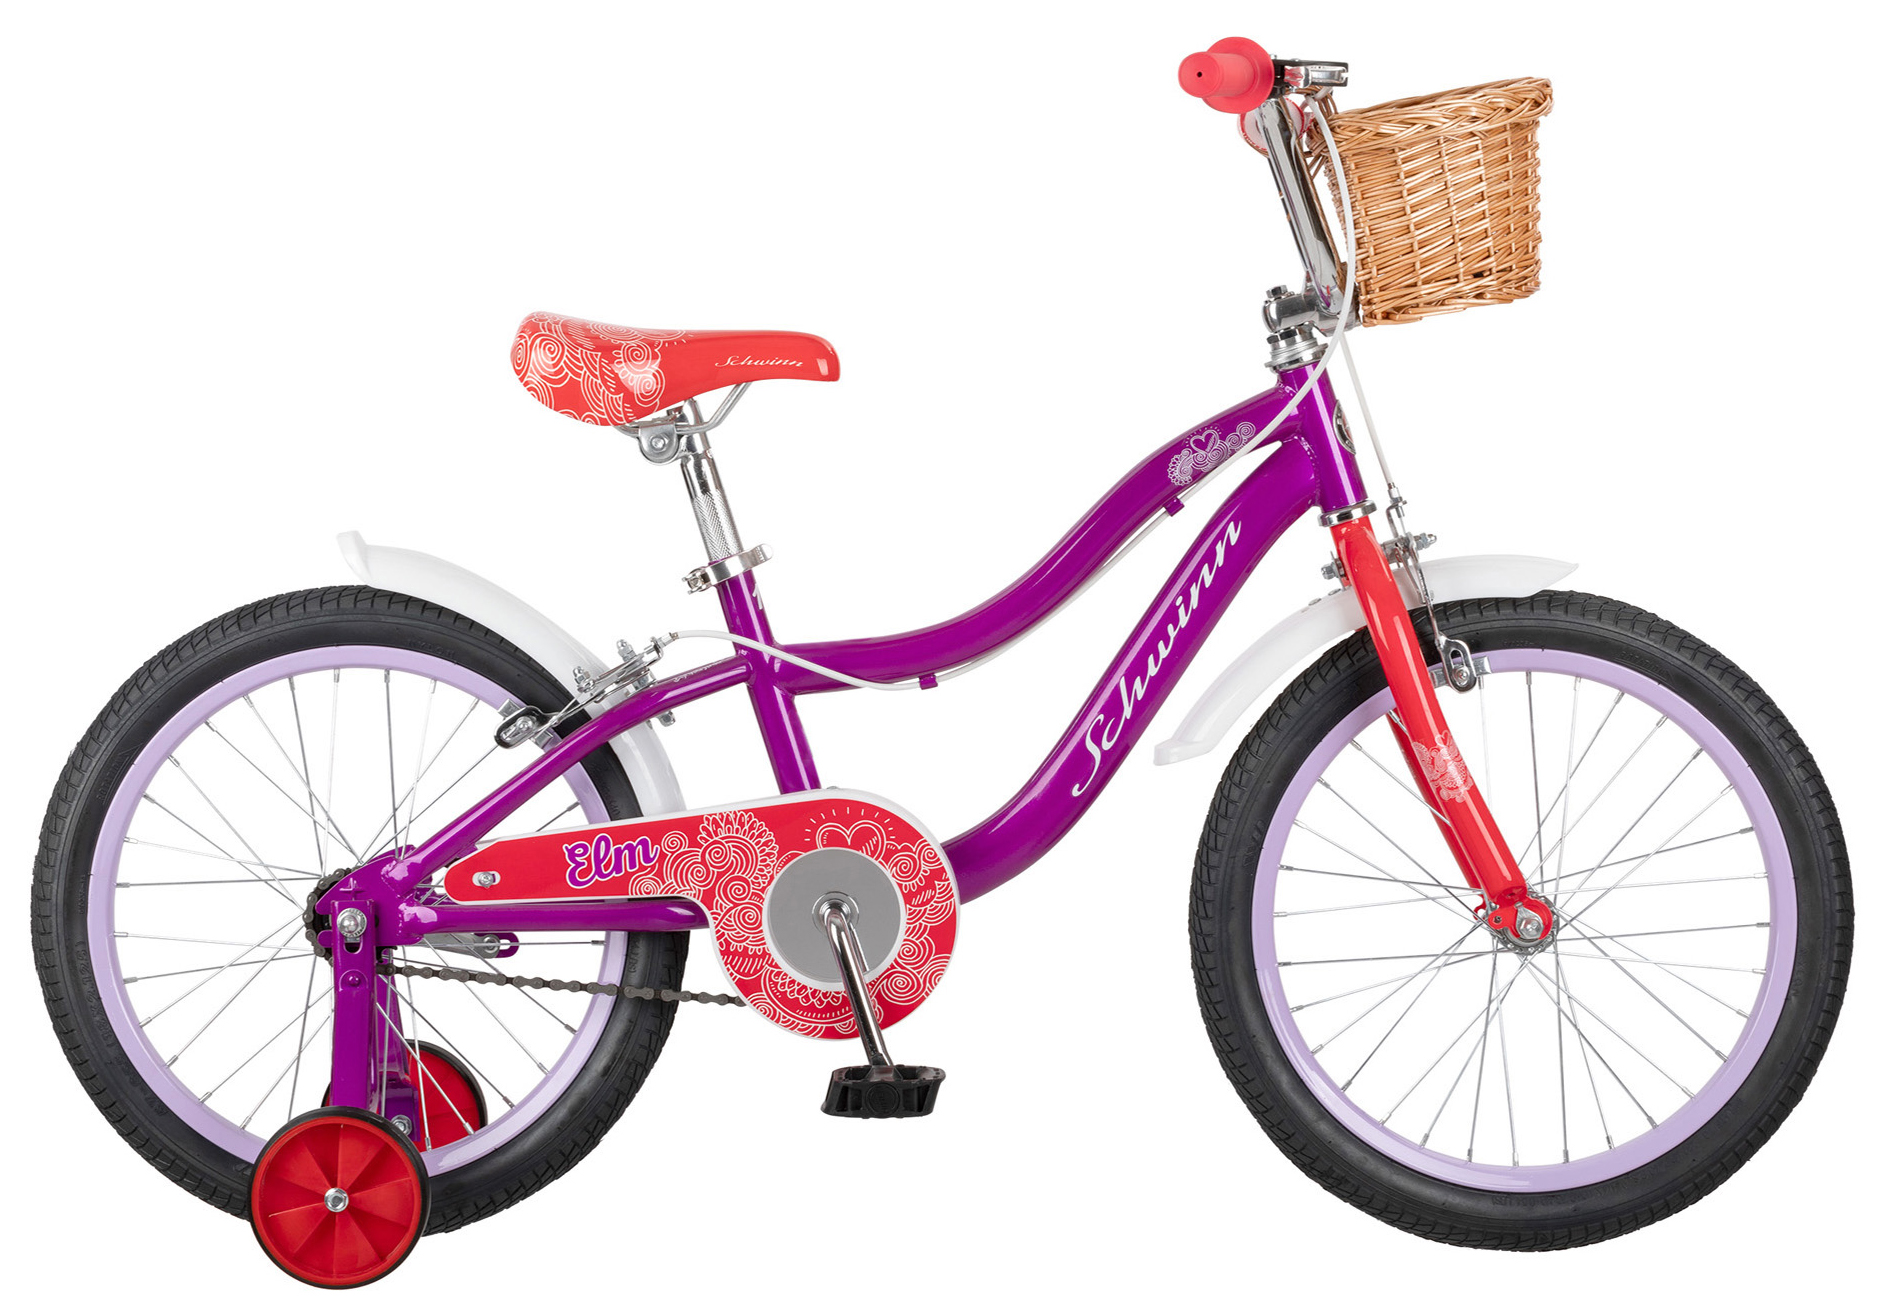  Отзывы о Детском велосипеде Schwinn Elm 18 2020